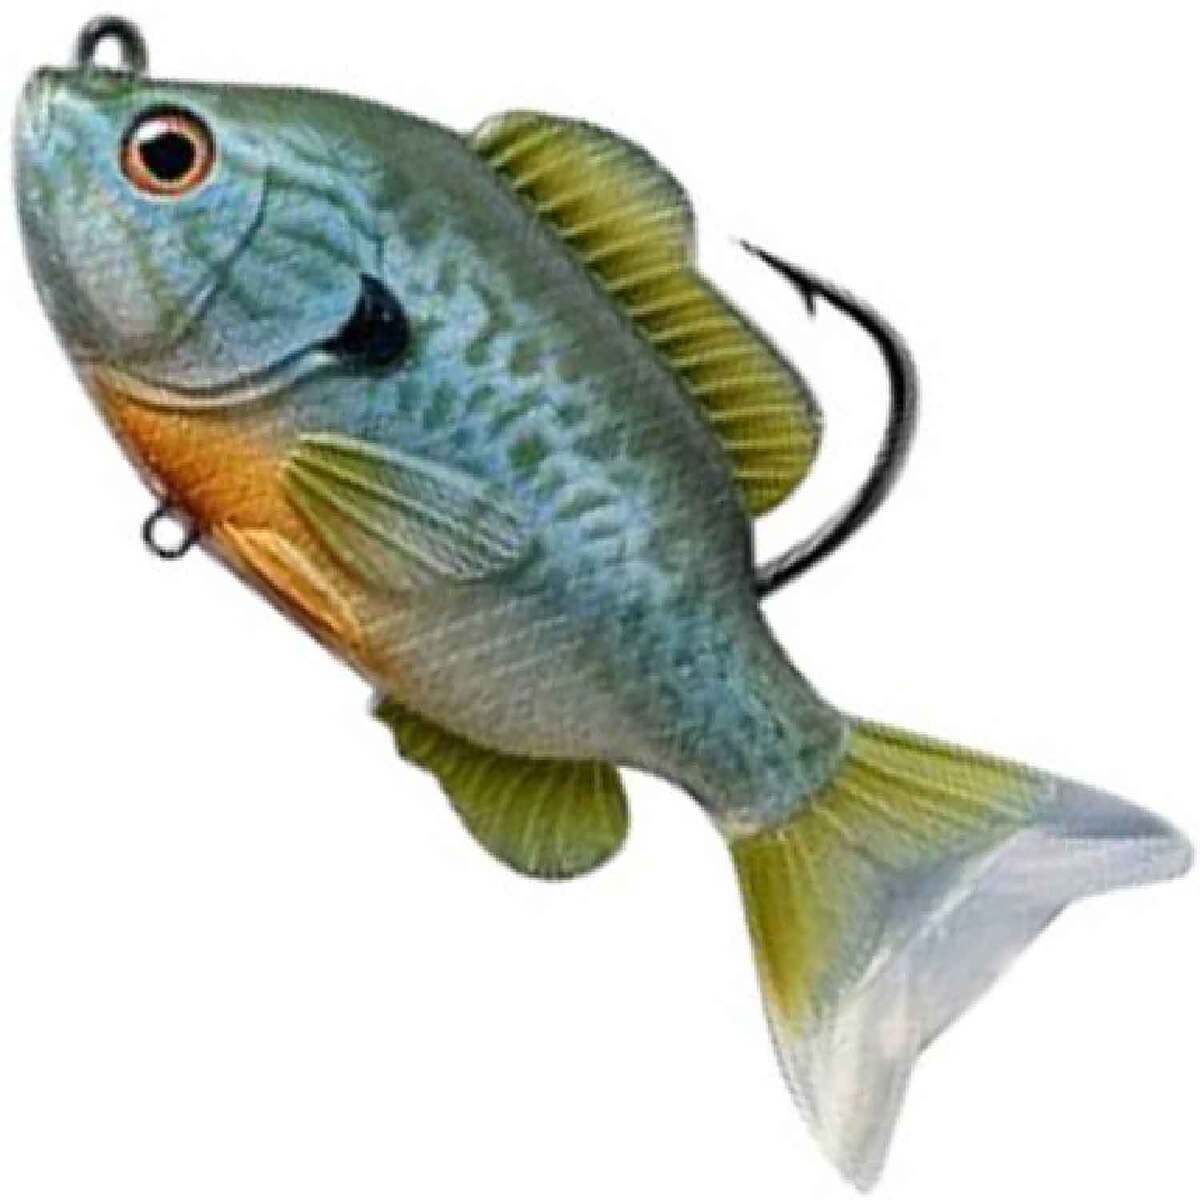 https://www.sportsmans.com/medias/live-target-sunfish-hard-swimbait-naturalblue-pumpkinseed-3-12in-12oz-1495117-1.jpg?context=bWFzdGVyfGltYWdlc3w2ODExNHxpbWFnZS9qcGVnfGFHVmtMMmc0WkM4eE1EZ3pOamMzTWpreE16RTRNaTh4TkRrMU1URTNMVEZmWW1GelpTMWpiMjUyWlhKemFXOXVSbTl5YldGMFh6RXlNREF0WTI5dWRtVnljMmx2YmtadmNtMWhkQXxkM2ZmMTdhOWRiMzhiMWViYjFjZGQwMjU4MWQ1MzIyMTc0ZDgzOGIyNjJlOWY4ZmVmYTBkNzQ5MjE1YmIxZjQ3